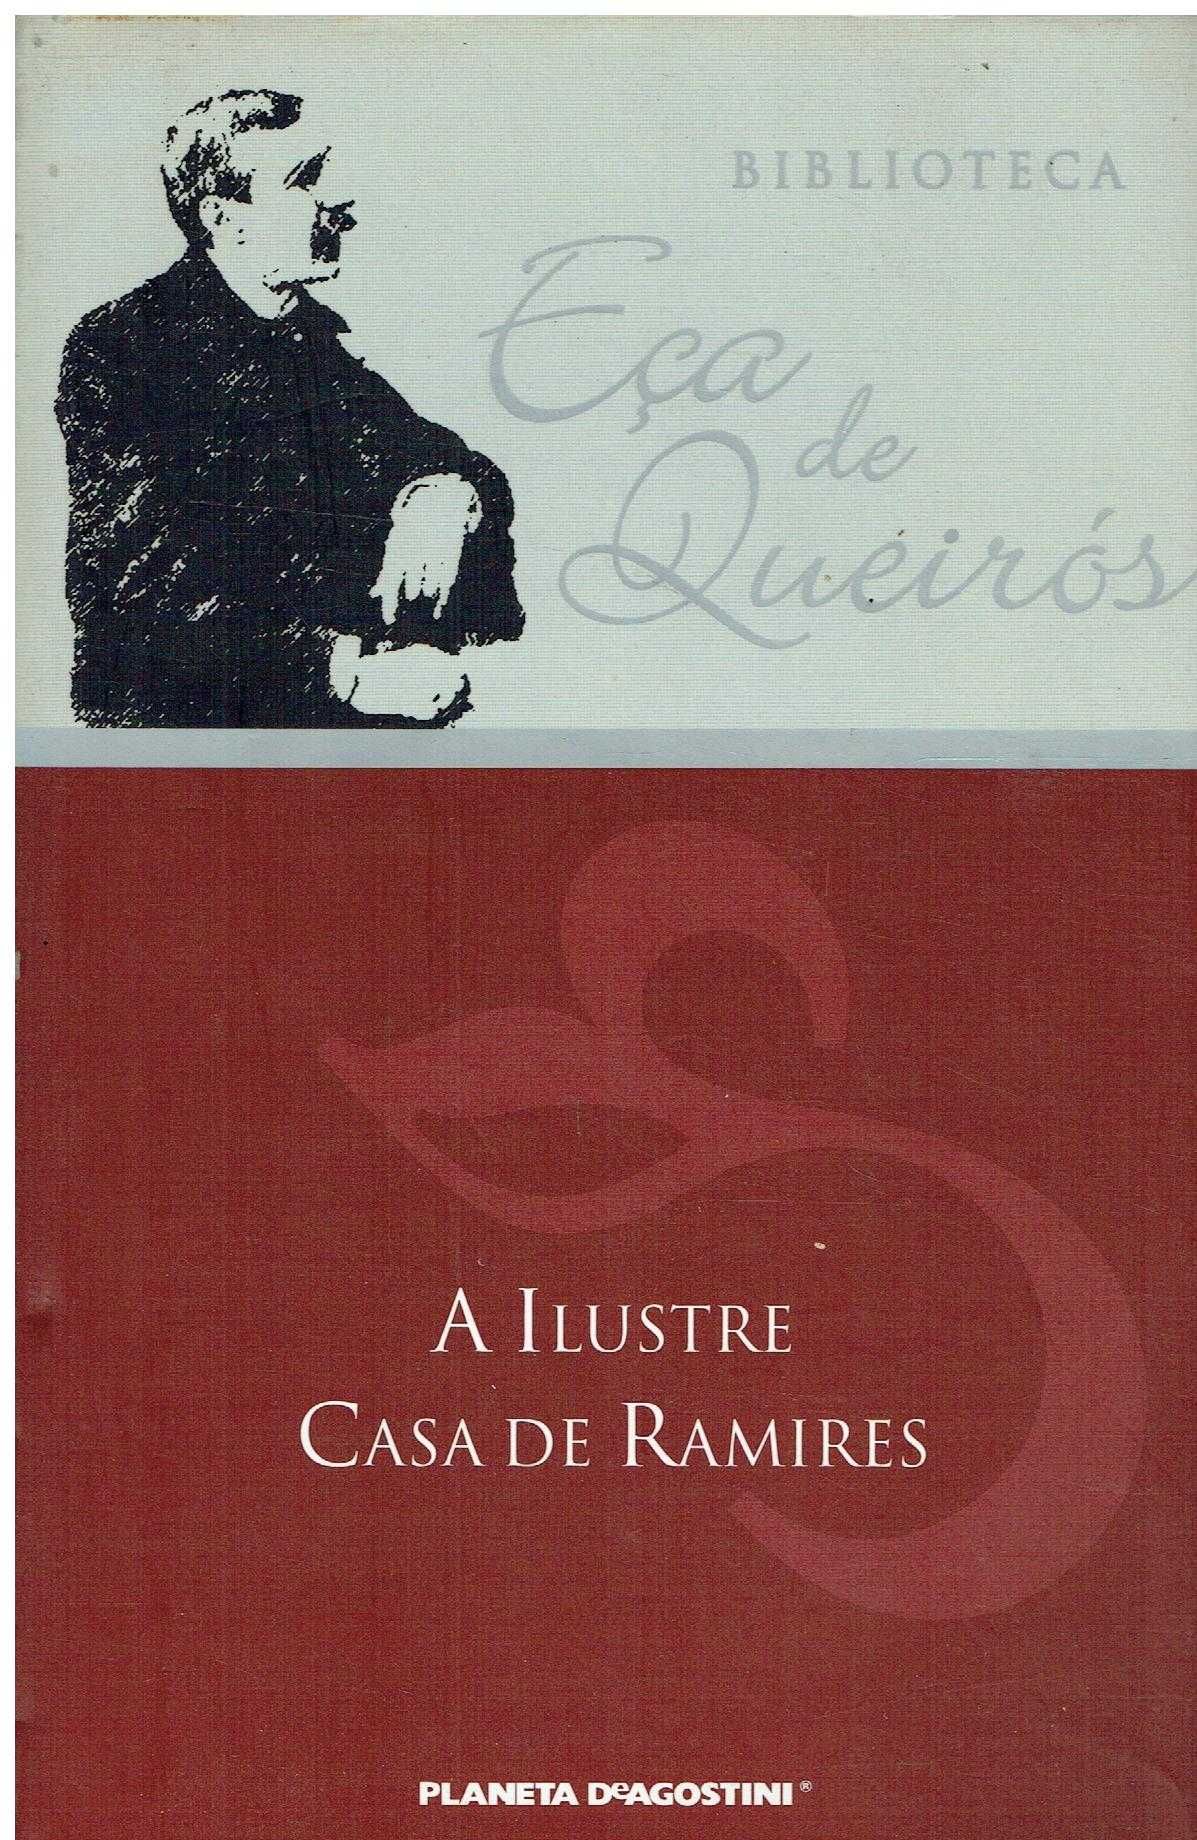 9668

Livros de Eça de Queiróz